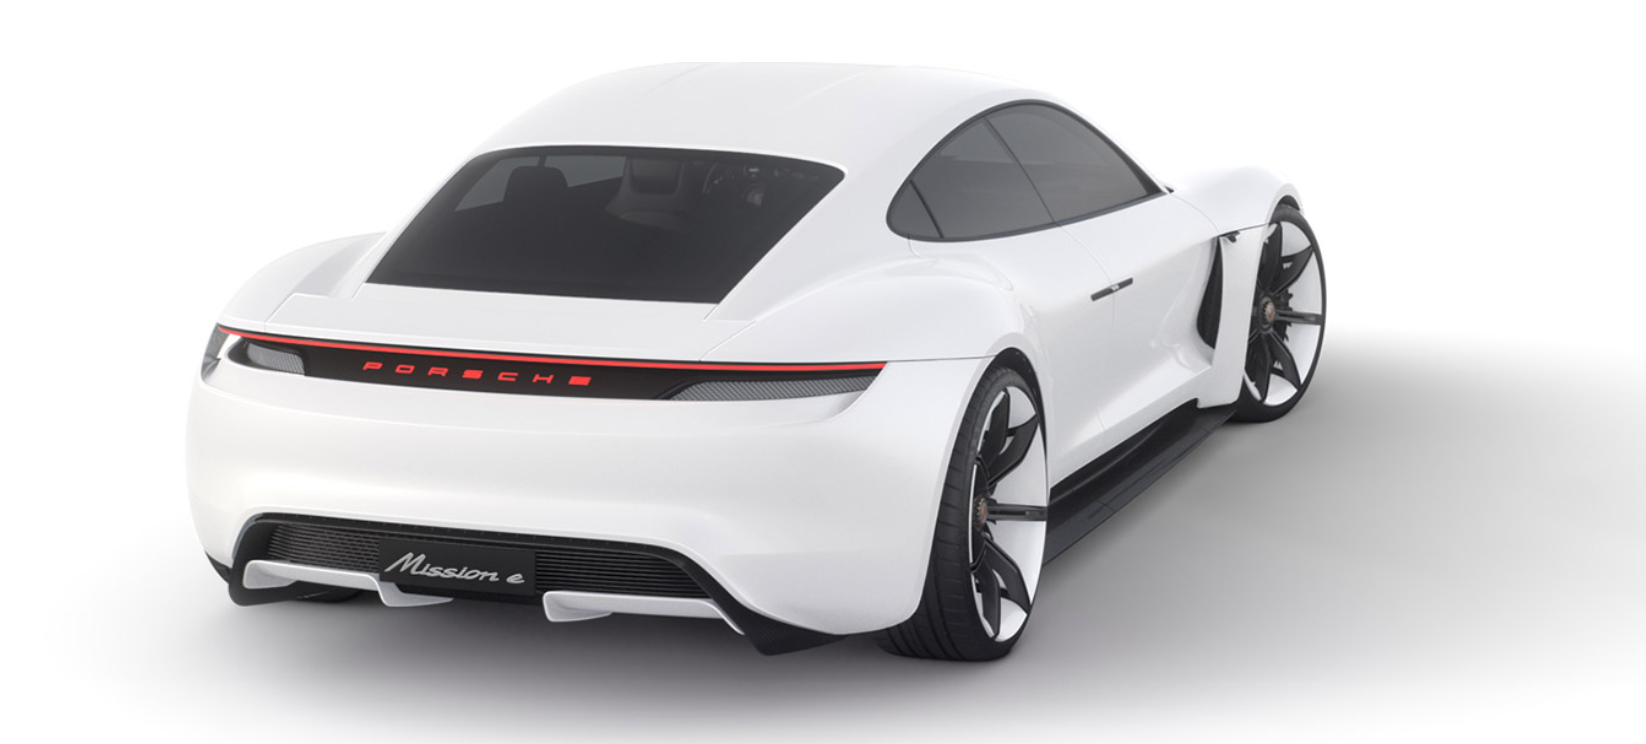 Porsche Mission E Electric Car Due 2019